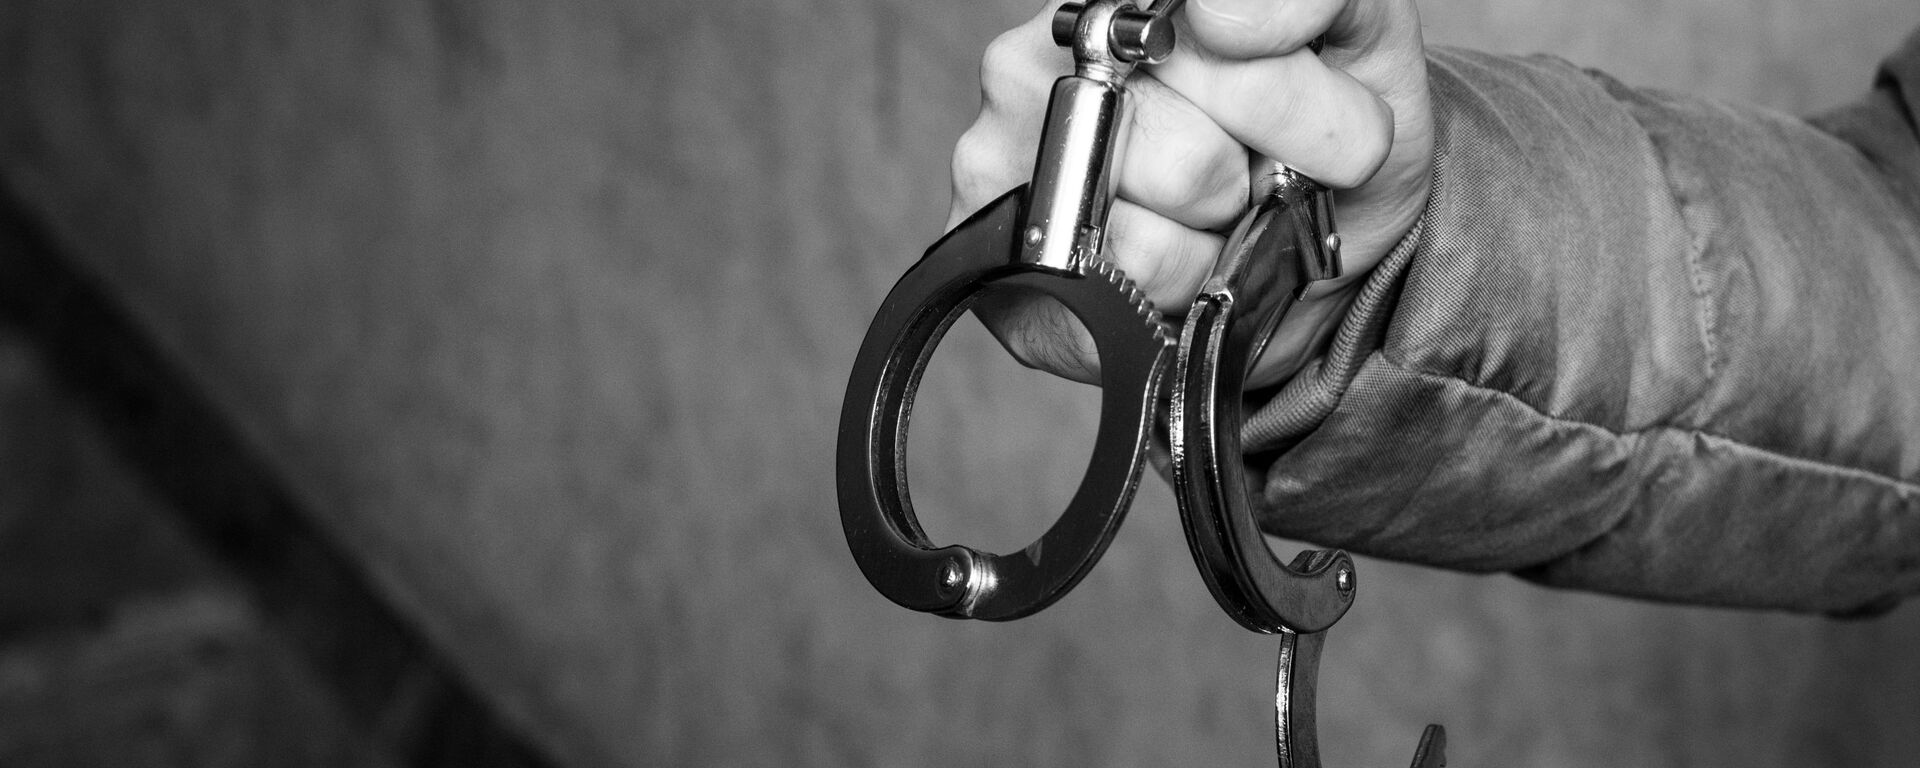 Задержание преступника - наручники надевают на руки - Sputnik Грузия, 1920, 02.02.2021